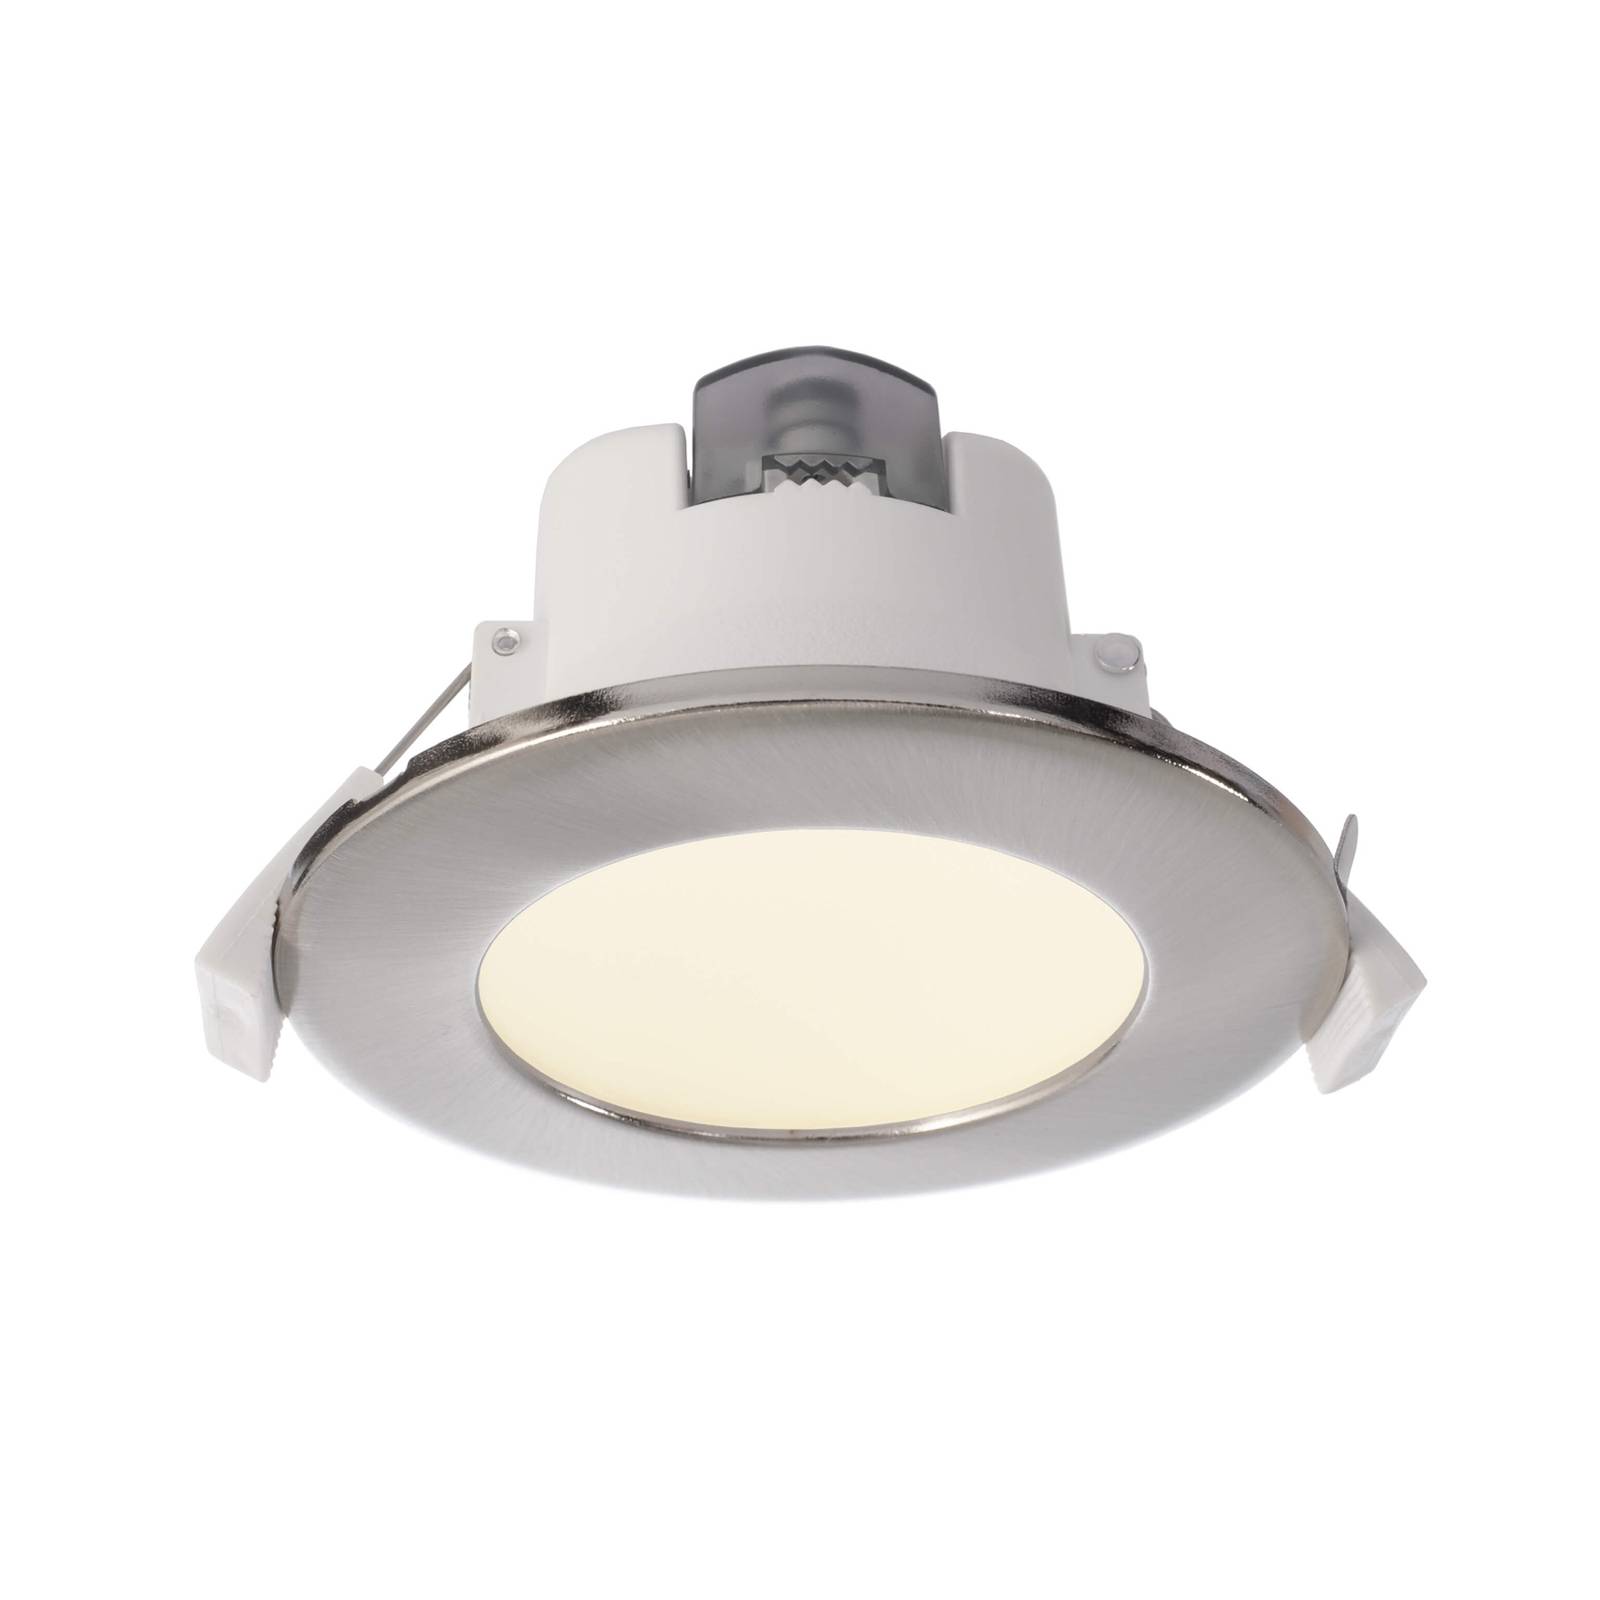 Deko-Light LED-Einbauleuchte Acrux 68, weiß, Ø 9,5 cm